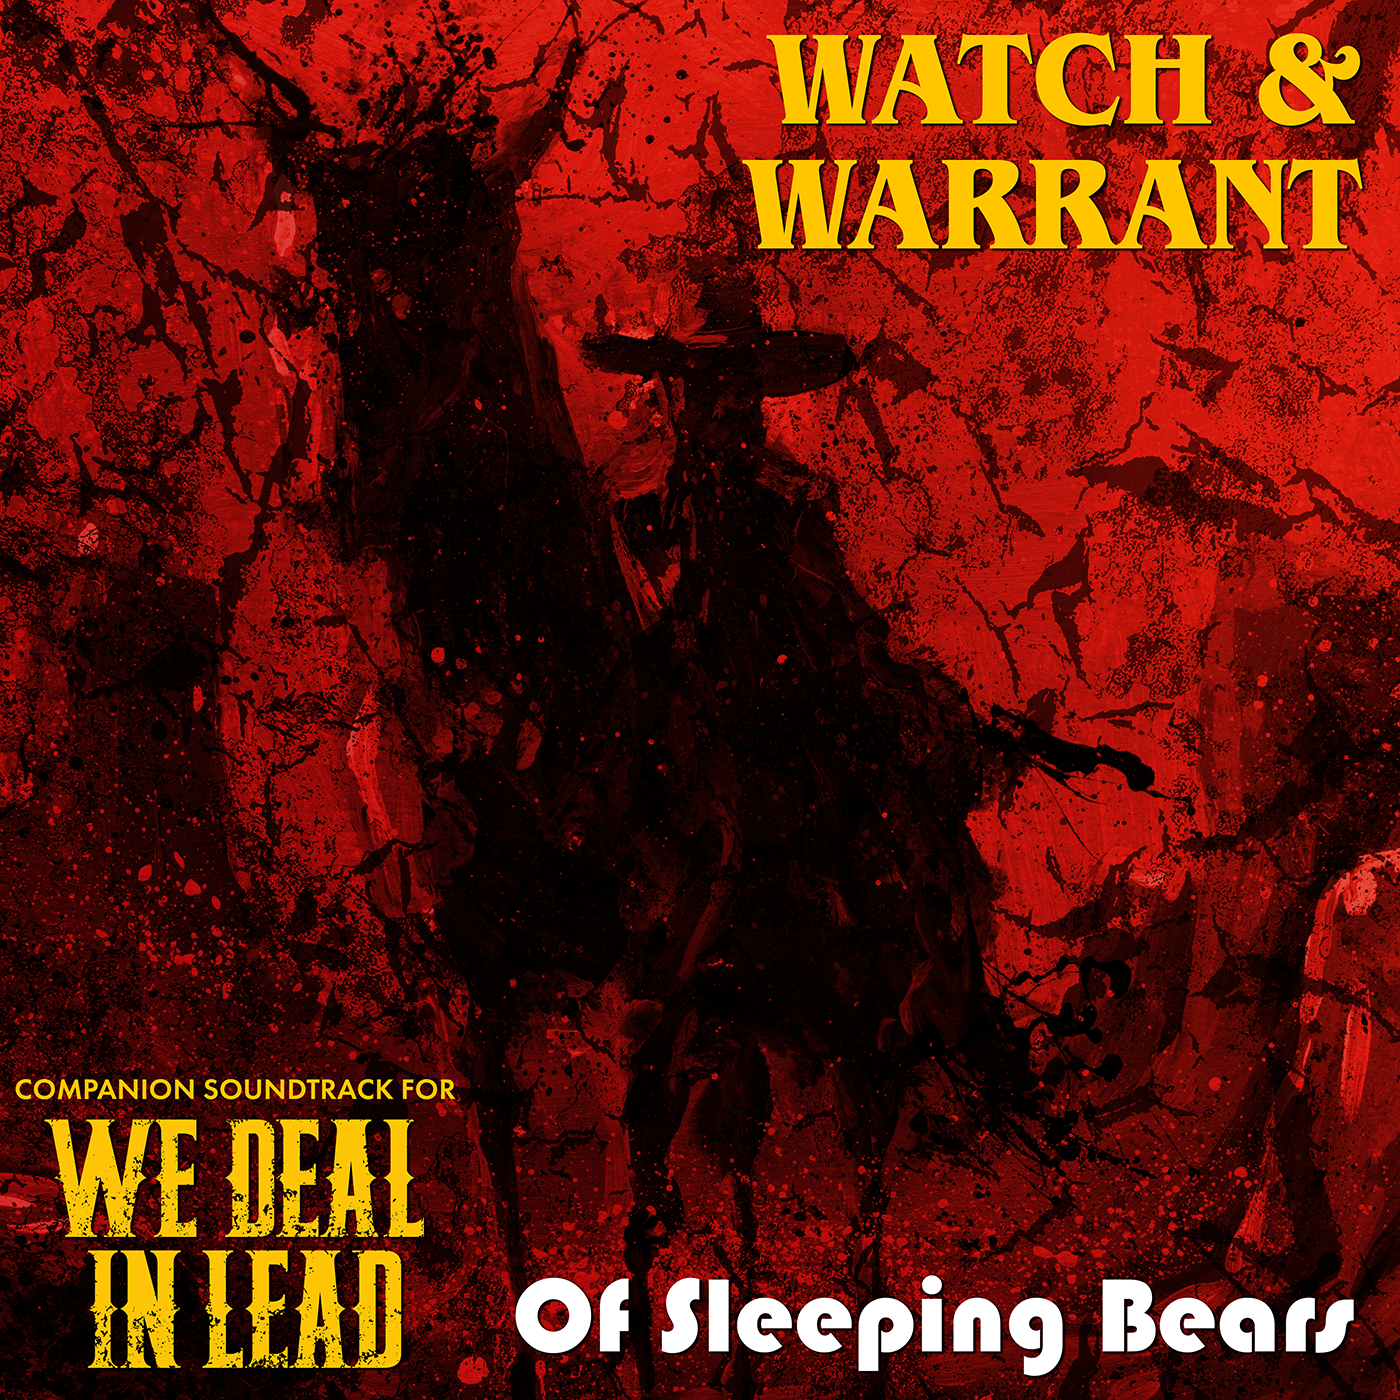 Of Sleeping Bears - Watch & Warrant